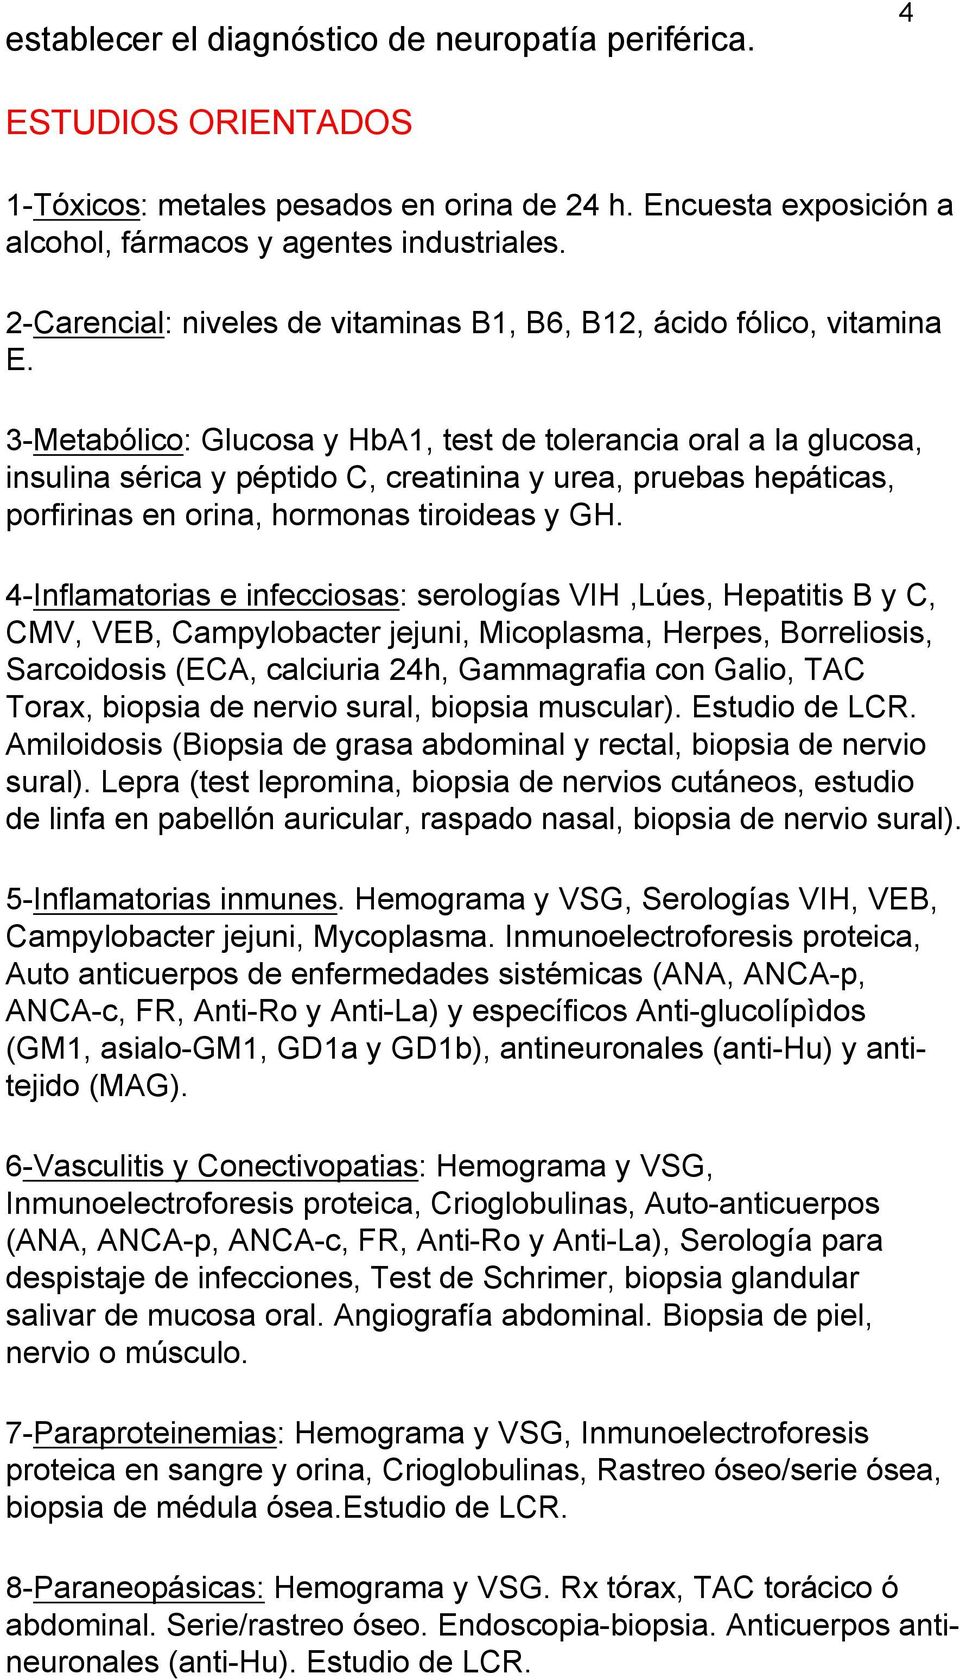 3-Metabólico: Glucosa y HbA1, test de tolerancia oral a la glucosa, insulina sérica y péptido C, creatinina y urea, pruebas hepáticas, porfirinas en orina, hormonas tiroideas y GH.